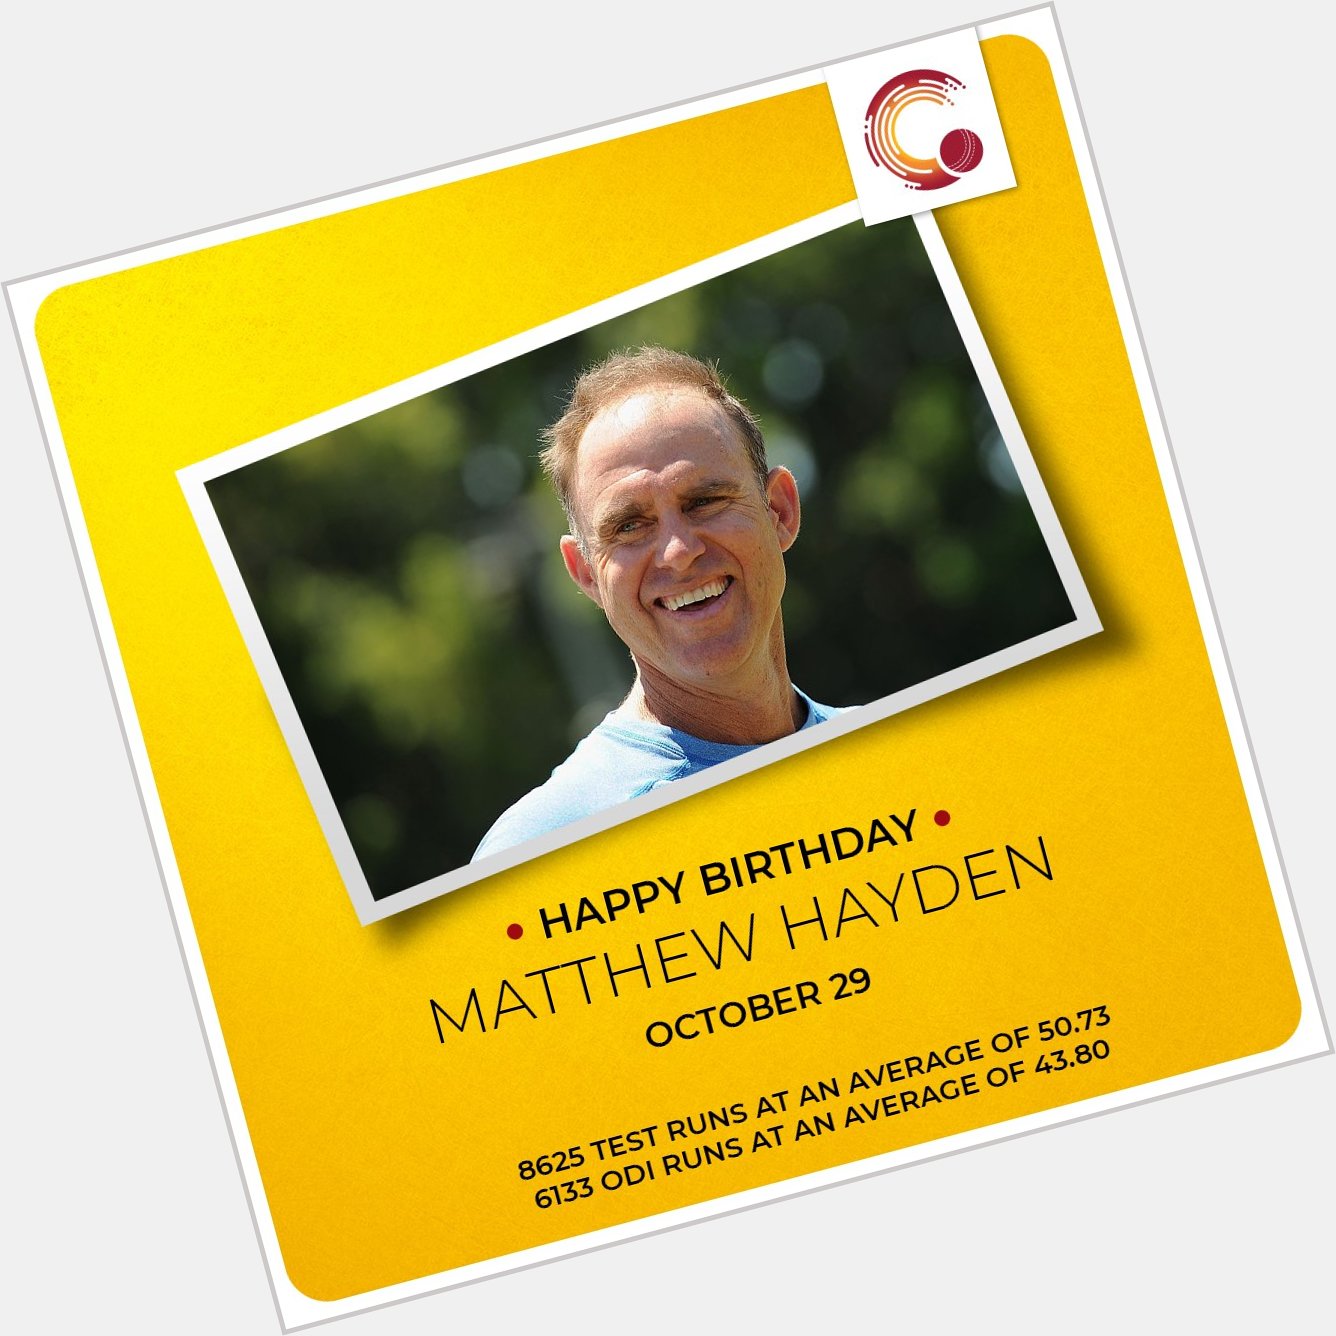 Happy Birthday to Matthew Hayden and Michael Vaughan! 